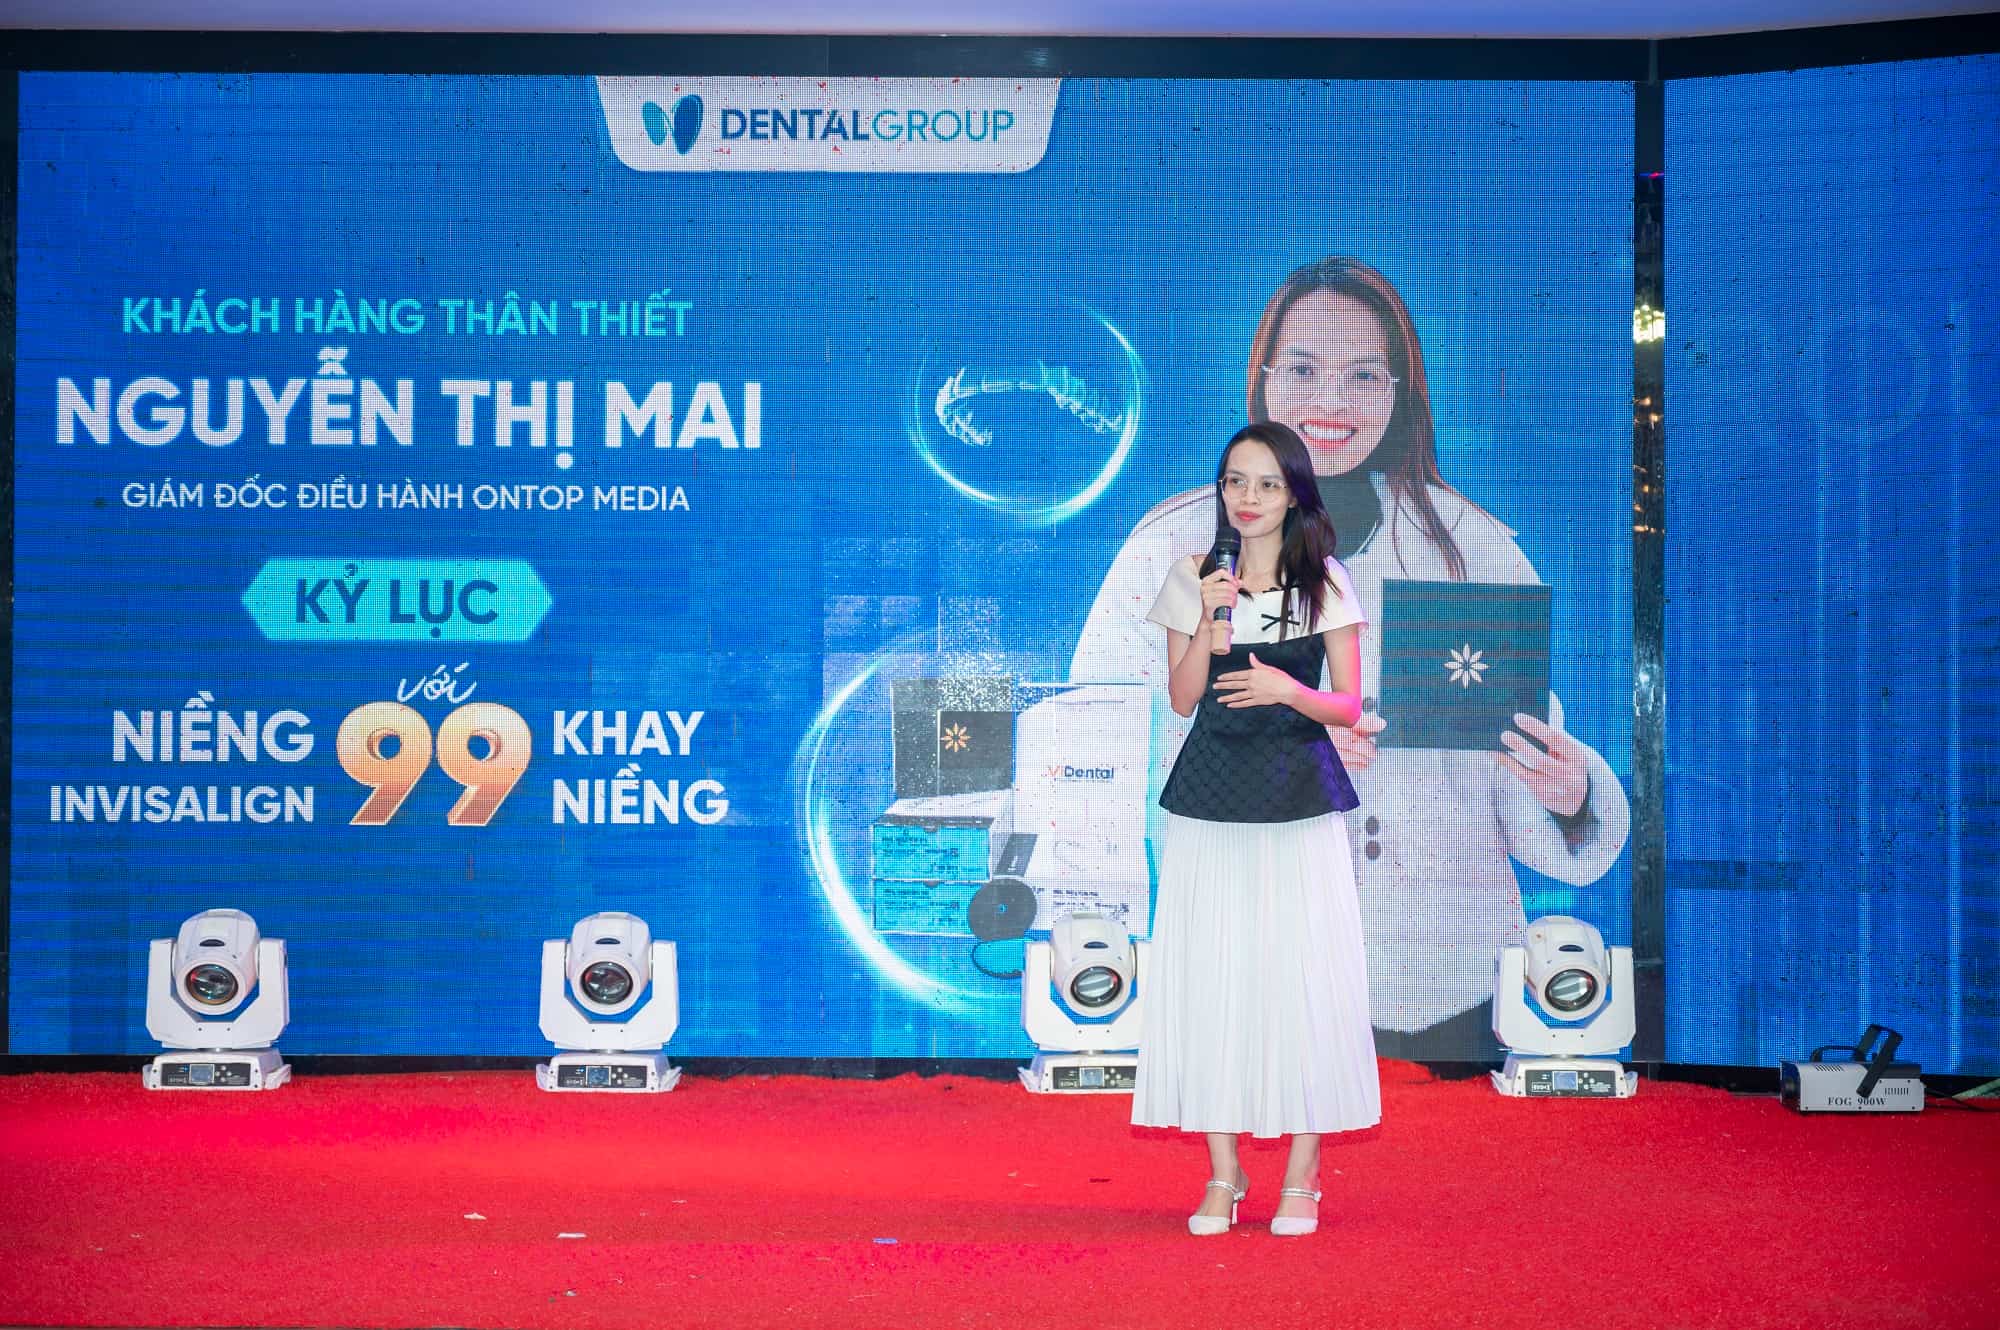 Chị Nguyễn Thị Mai, khách hàng thân thiết của Dental Group có nhiều chia sẻ tại sự kiện